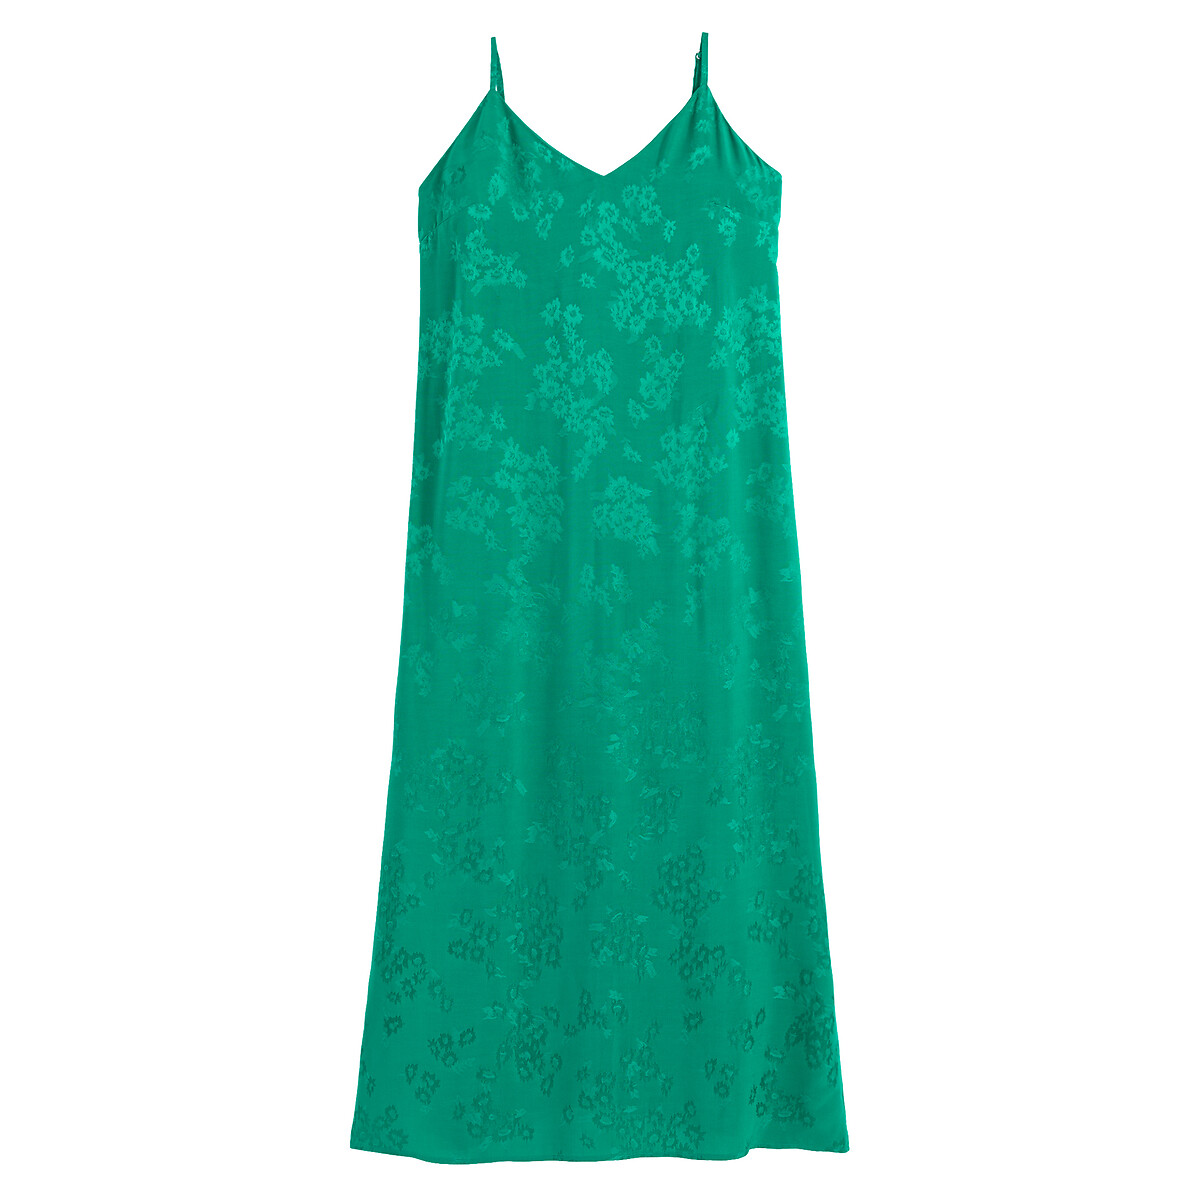 Платье Длинное в стиле нижнего белья тонкие бретели 54 зеленый LaRedoute, размер 54 - фото 5